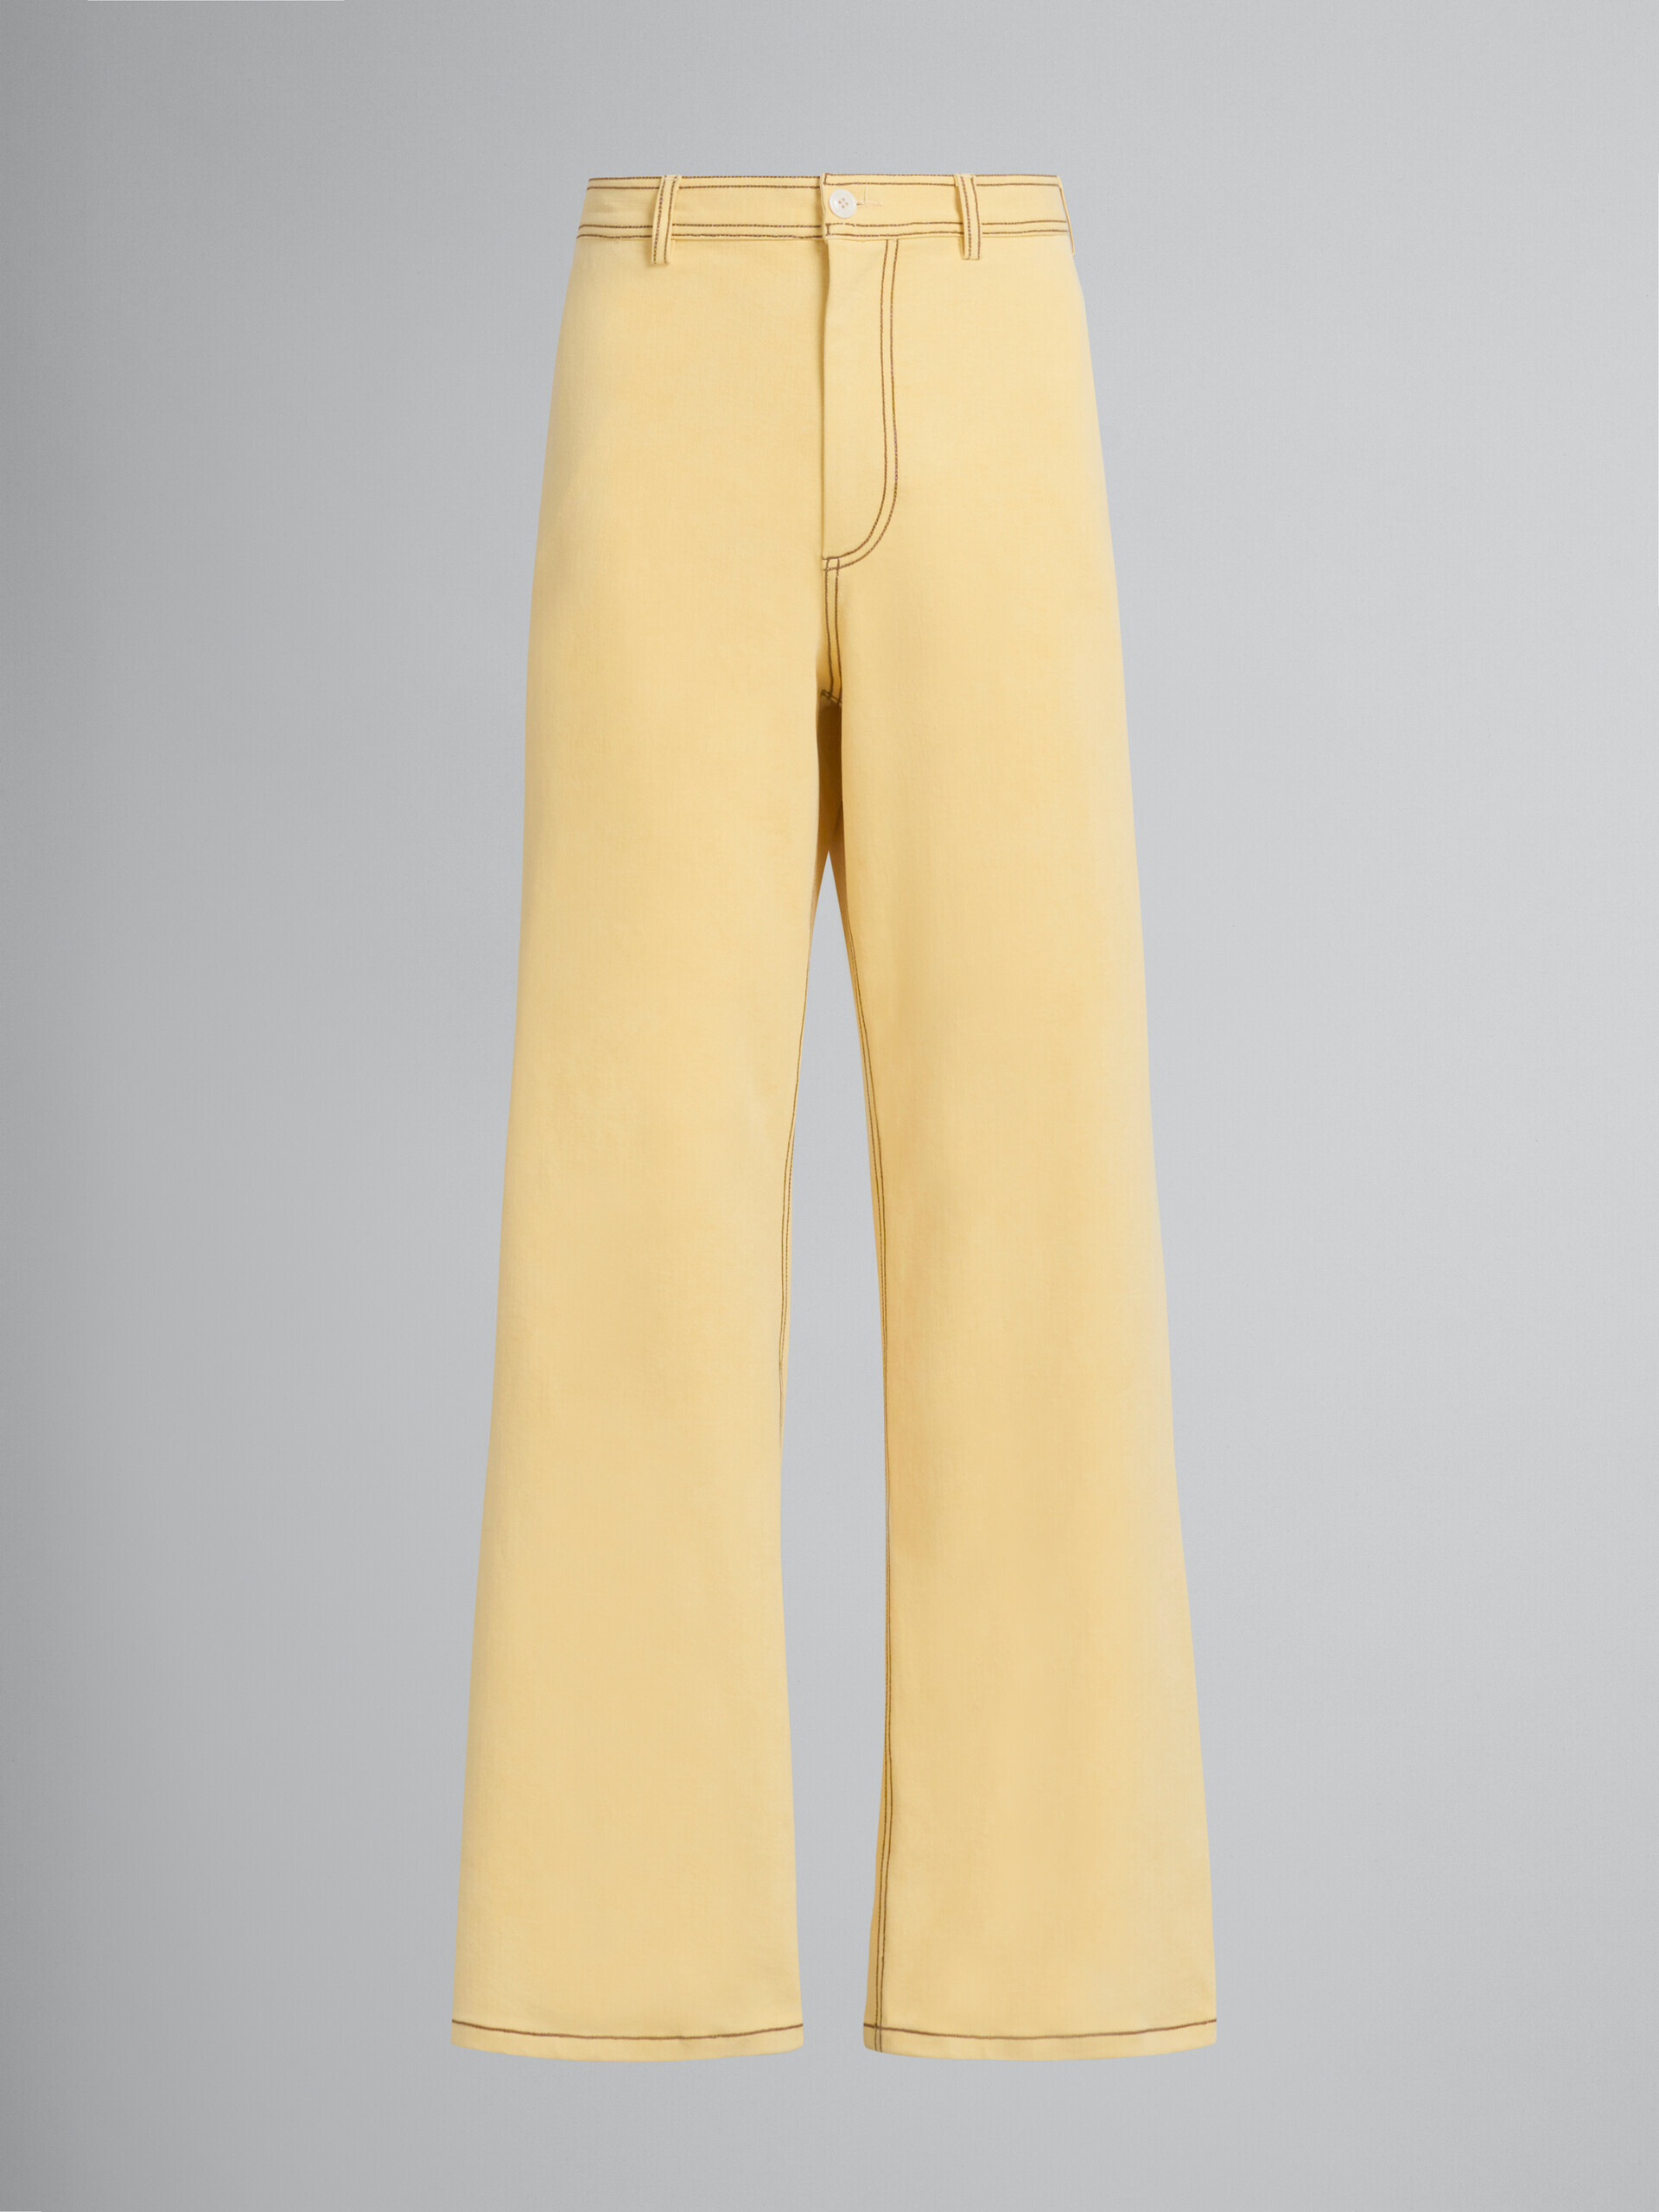 Pantaloni in denim biologico giallo con cuciture a contrasto - Pantaloni - Image 2